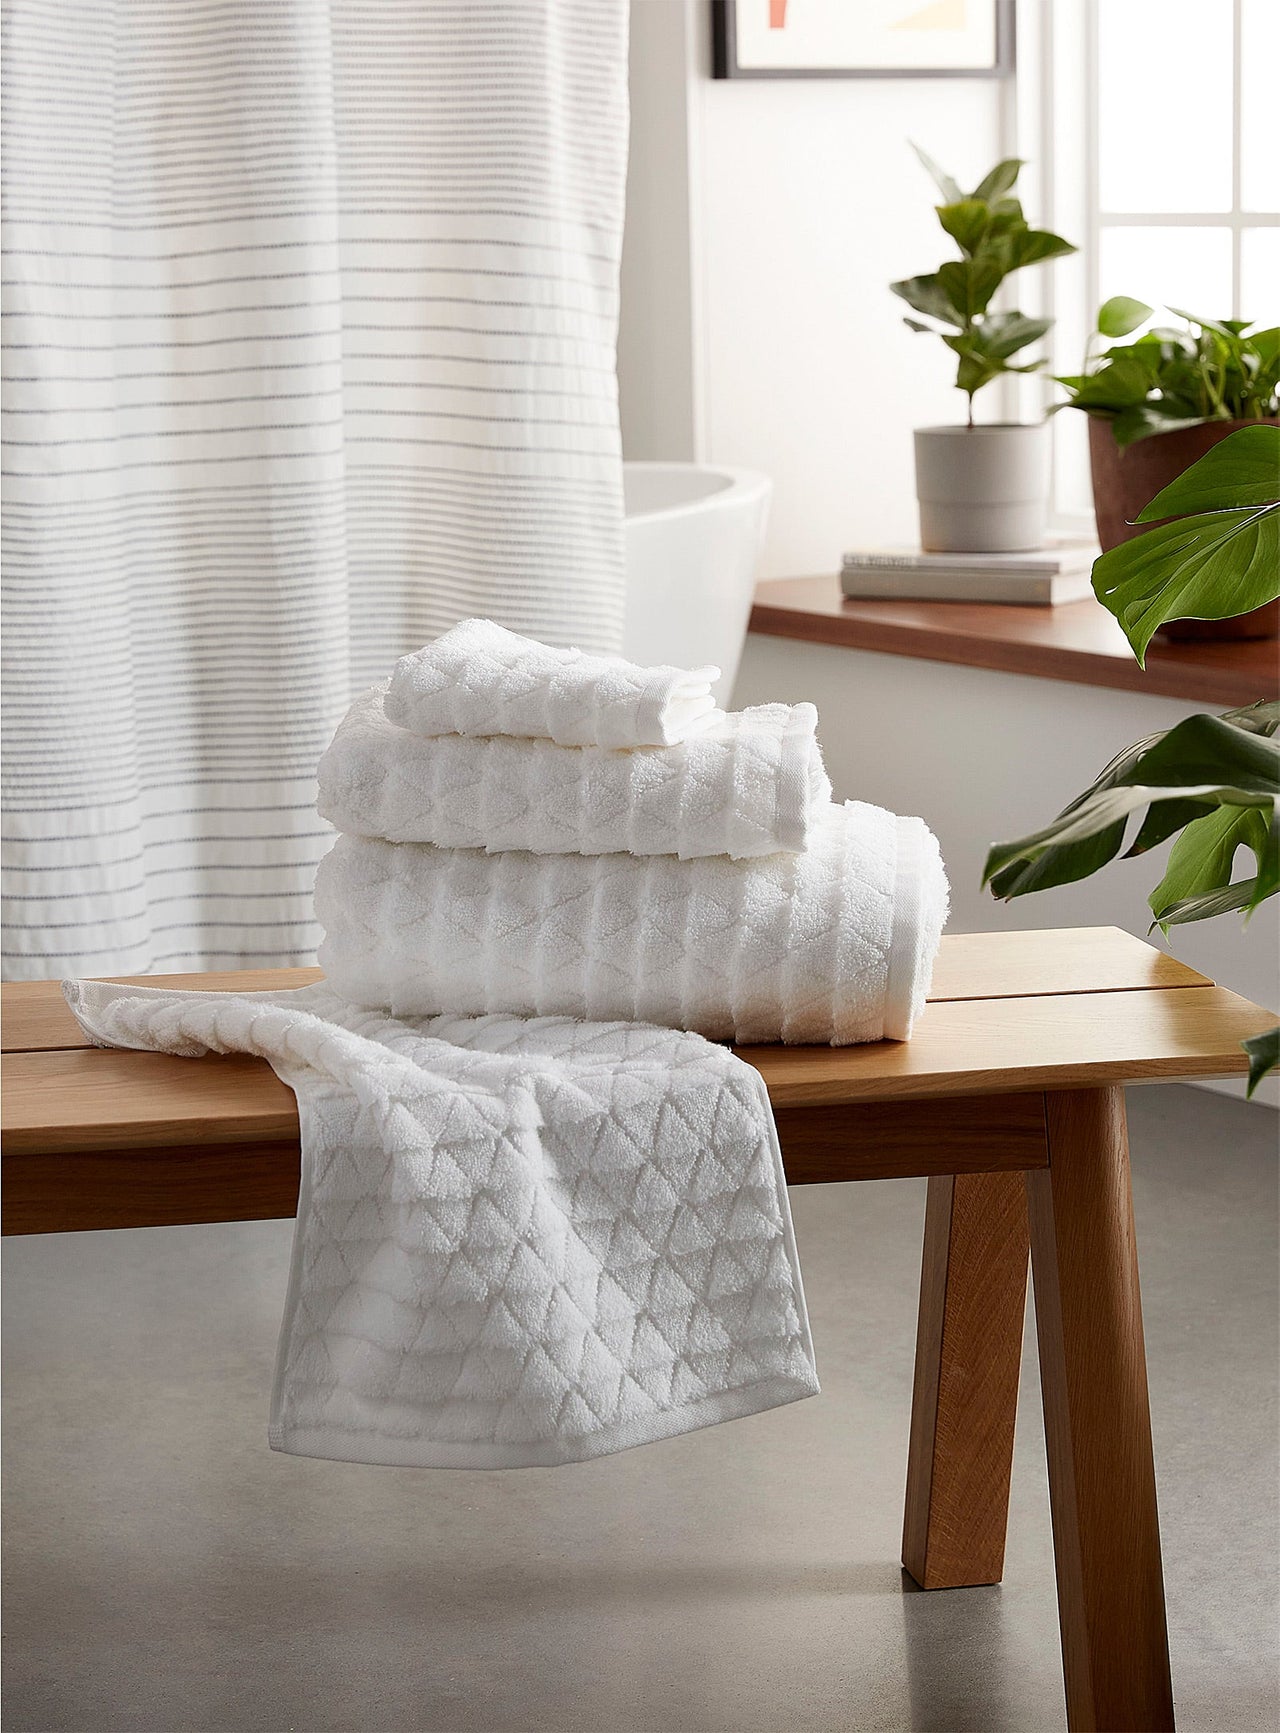 Prismatic Turkish cotton towels